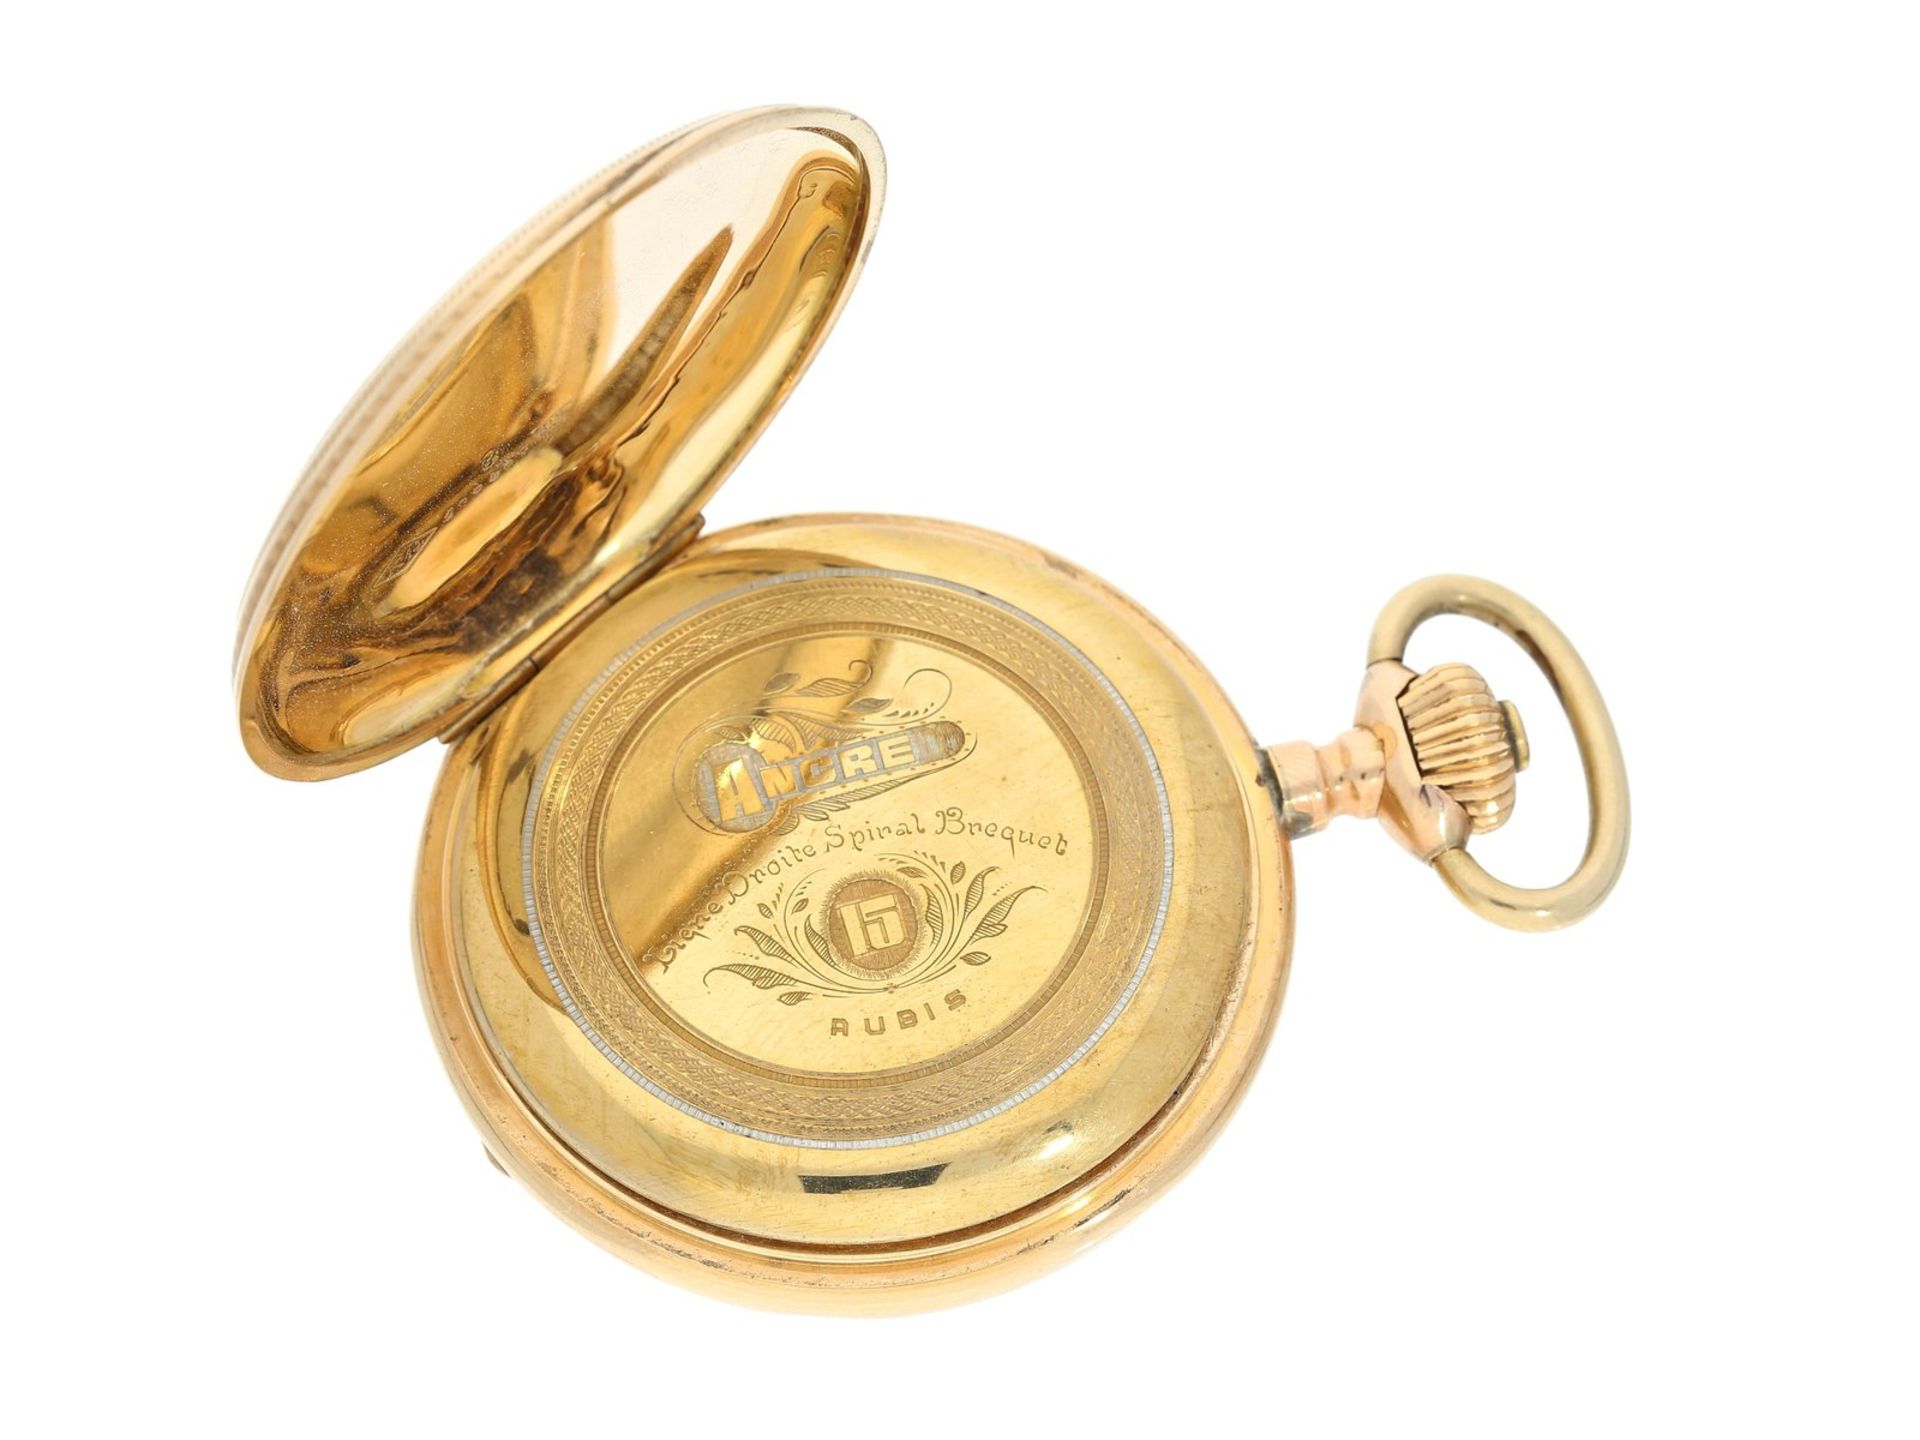 Taschenuhr: goldene Taschenuhr mit goldener Chatelaine, Ducommun-Sandoz & Cie. La Chaux-de-Fonds, um - Bild 4 aus 4